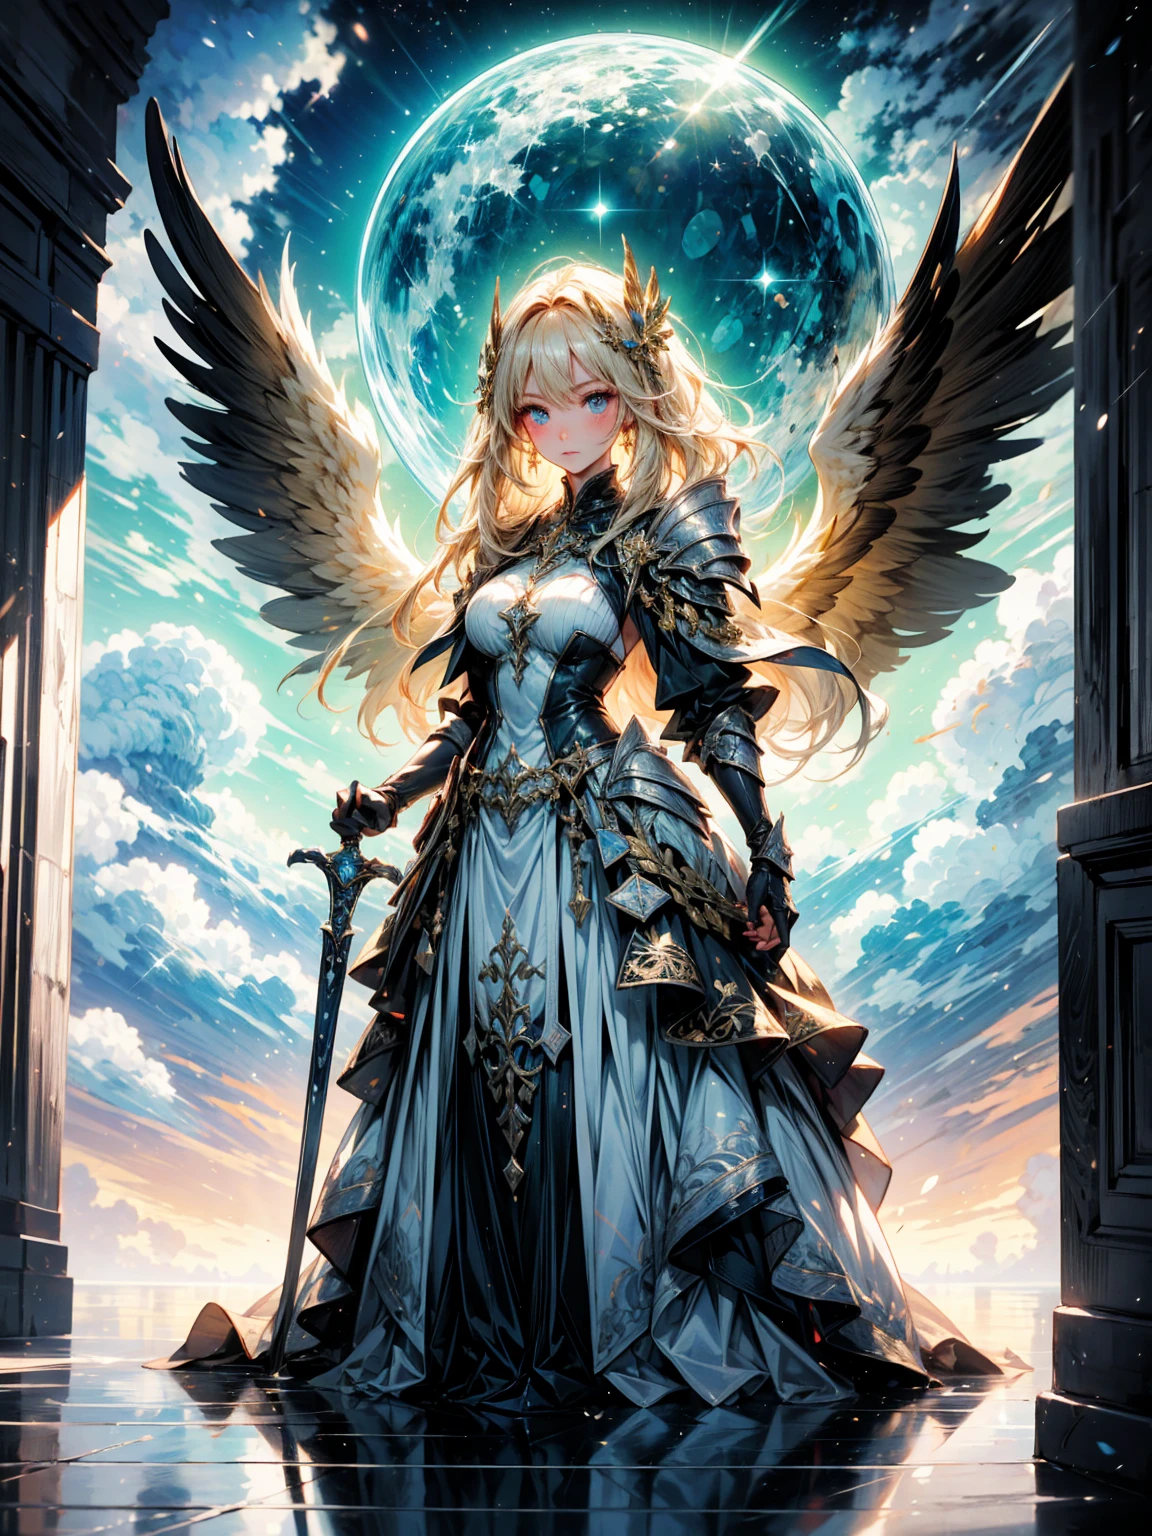 ((ถ่ายทั้งตัว)) ของหญิงสาวที่เปล่งประกาย, ornate ทองen armor with intricate engravings, ยืนอยู่ในรัศมีอันสดใส, อาณาจักรสวรรค์. เธอมีมานาน, ผมสีบลอนด์สลวยและดวงตาสีฟ้าเปล่งประกาย. ใหญ่, feathered สีขาว wings spread คู่บารมีally behind her. เธอถือแวววาว, ดาบศักดิ์สิทธิ์ในมือของเธอ, ซึ่งเปล่งแสงอันศักดิ์สิทธิ์ออกมา. The บรรยากาศ is {ศักดิ์สิทธิ์|คู่บารมี}, with beams of sunlight filtering through เมฆไม่มีตัวตน. พื้นด้านล่างทำจากหินอ่อนขัดเงา, สะท้อนถึงรูปร่างอันสดใสของเธอและเพิ่มบรรยากาศแห่งสวรรค์. รอบๆ ตัวเธอนั้นมีลูกกลมแห่งแสงลอยอยู่ในเฉดสีของ {ทอง|สีขาว}, หล่อหลอมความอบอุ่น, แสงสวรรค์. พื้นหลังมีความยิ่งใหญ่, โครงสร้างสูงตระหง่านที่ทำจากความเก่าแก่, สีขาว stone and adorned with ทองen accents, บ่งบอกถึงสถานที่ศักดิ์สิทธิ์. The scene is เงียบสงบ and awe-inspiring, ด้วยใบหน้าของเธอที่แสดงออกถึงความสงบแต่มุ่งมั่น, ดวงตาของเธอมุ่งความสนใจไปที่ภารกิจศักดิ์สิทธิ์ของเธออย่างตั้งใจ.

[คุณภาพดีที่สุด], [ผลงานชิ้นเอก], [ละเอียดมาก], [4k], {เงียบสงบ|คู่บารมี} บรรยากาศ, อาณาจักรสวรรค์, {ท่าทางแบบไดนามิก|ท่าทางที่กล้าหาญ}, แสงสว่างอันเจิดจ้า, {เงาอันนุ่มนวล|แสงสว่างอันศักดิ์สิทธิ์}, {สะท้อนแสงบนหินอ่อน:0.7}, {เมฆไม่มีตัวตน:0.6}, {ลูกกลมแสงลอย:0.5}, {ทองen accents:0.4}, {โครงสร้างที่เก่าแก่:0.3}.